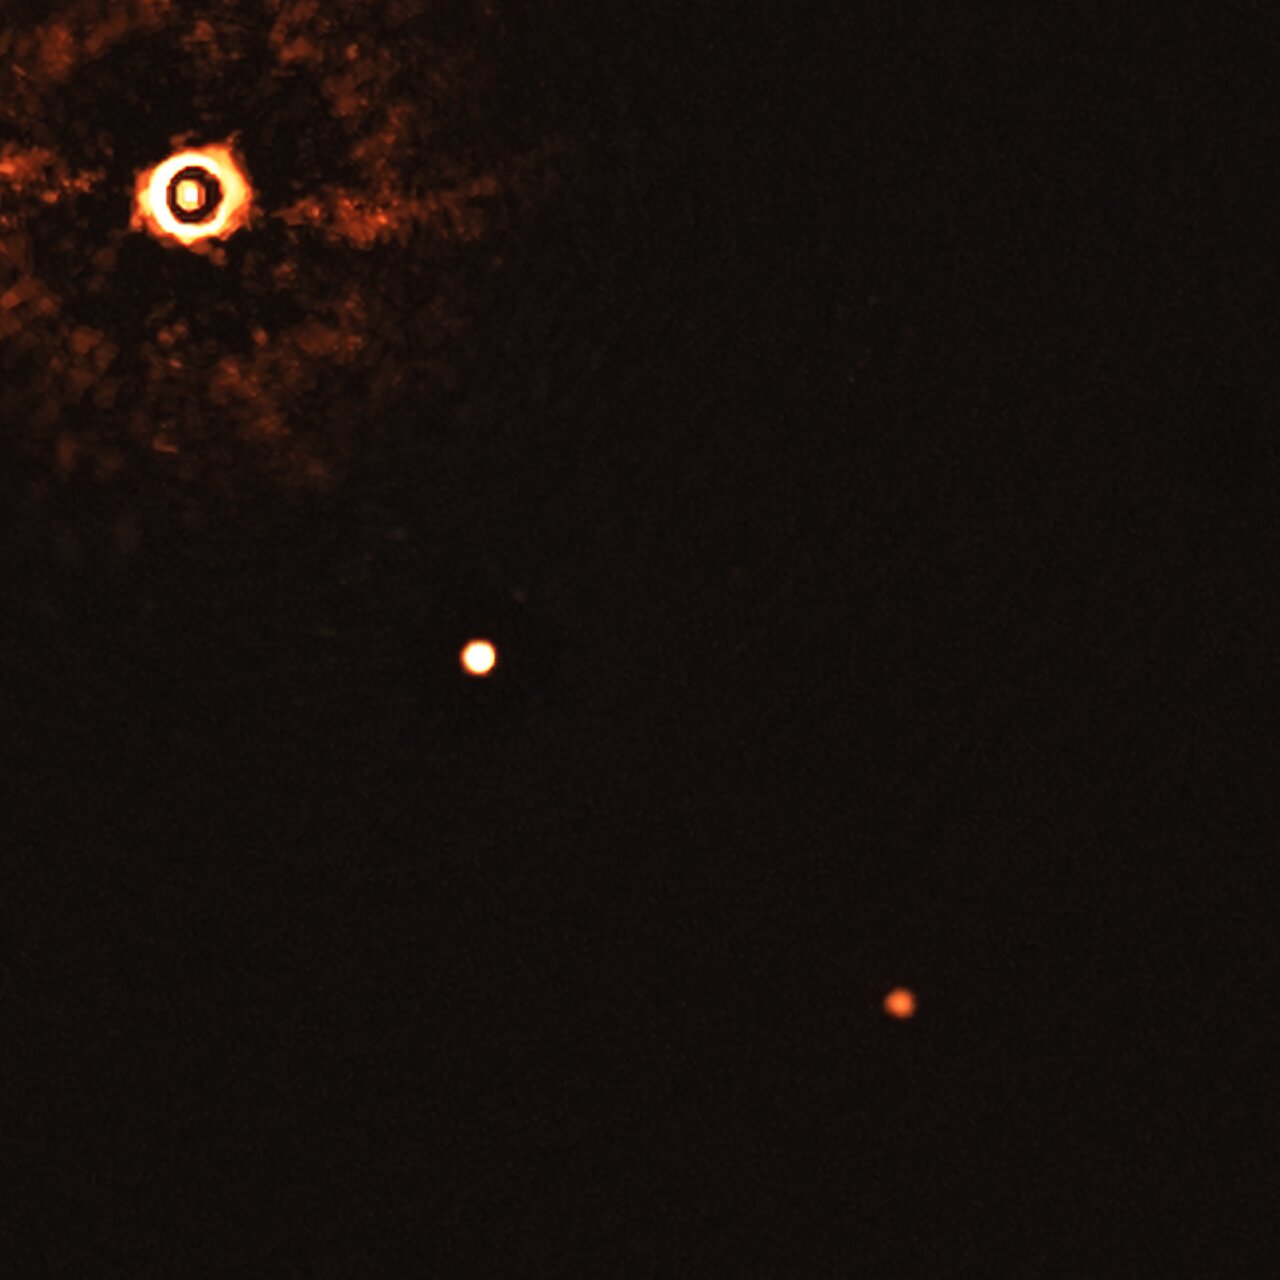 На знімку зображено TYC 8998-760-1 в компанії двох гігантських планет, TYC 8998-760-1b і TYC 8998-760-1c. Дві планети видно як дві яскраві точки в центрі (TYC 8998-760-1b) і в правому нижньому кутку (TYC 8998-760-1c) рамки. Інші яскраві точки, які є фоновими зірками, які також видно на зображенні. Зображення надано: ESO / Bohn et al.